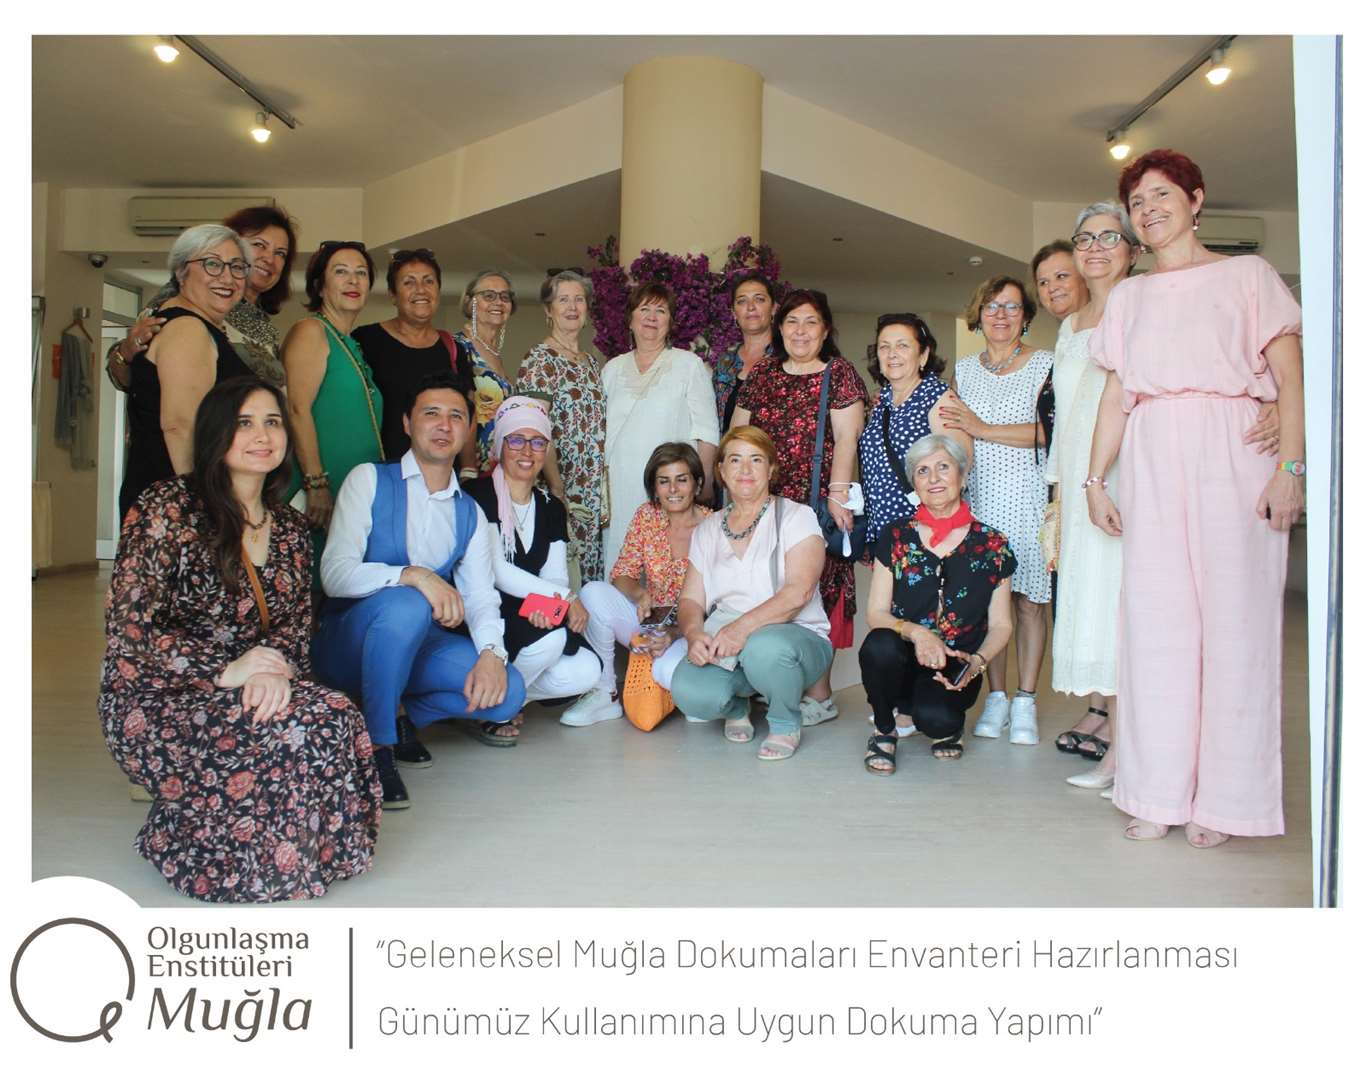       GEKA'dan Muğla'nın geleneksel dokumalarına destek haberi